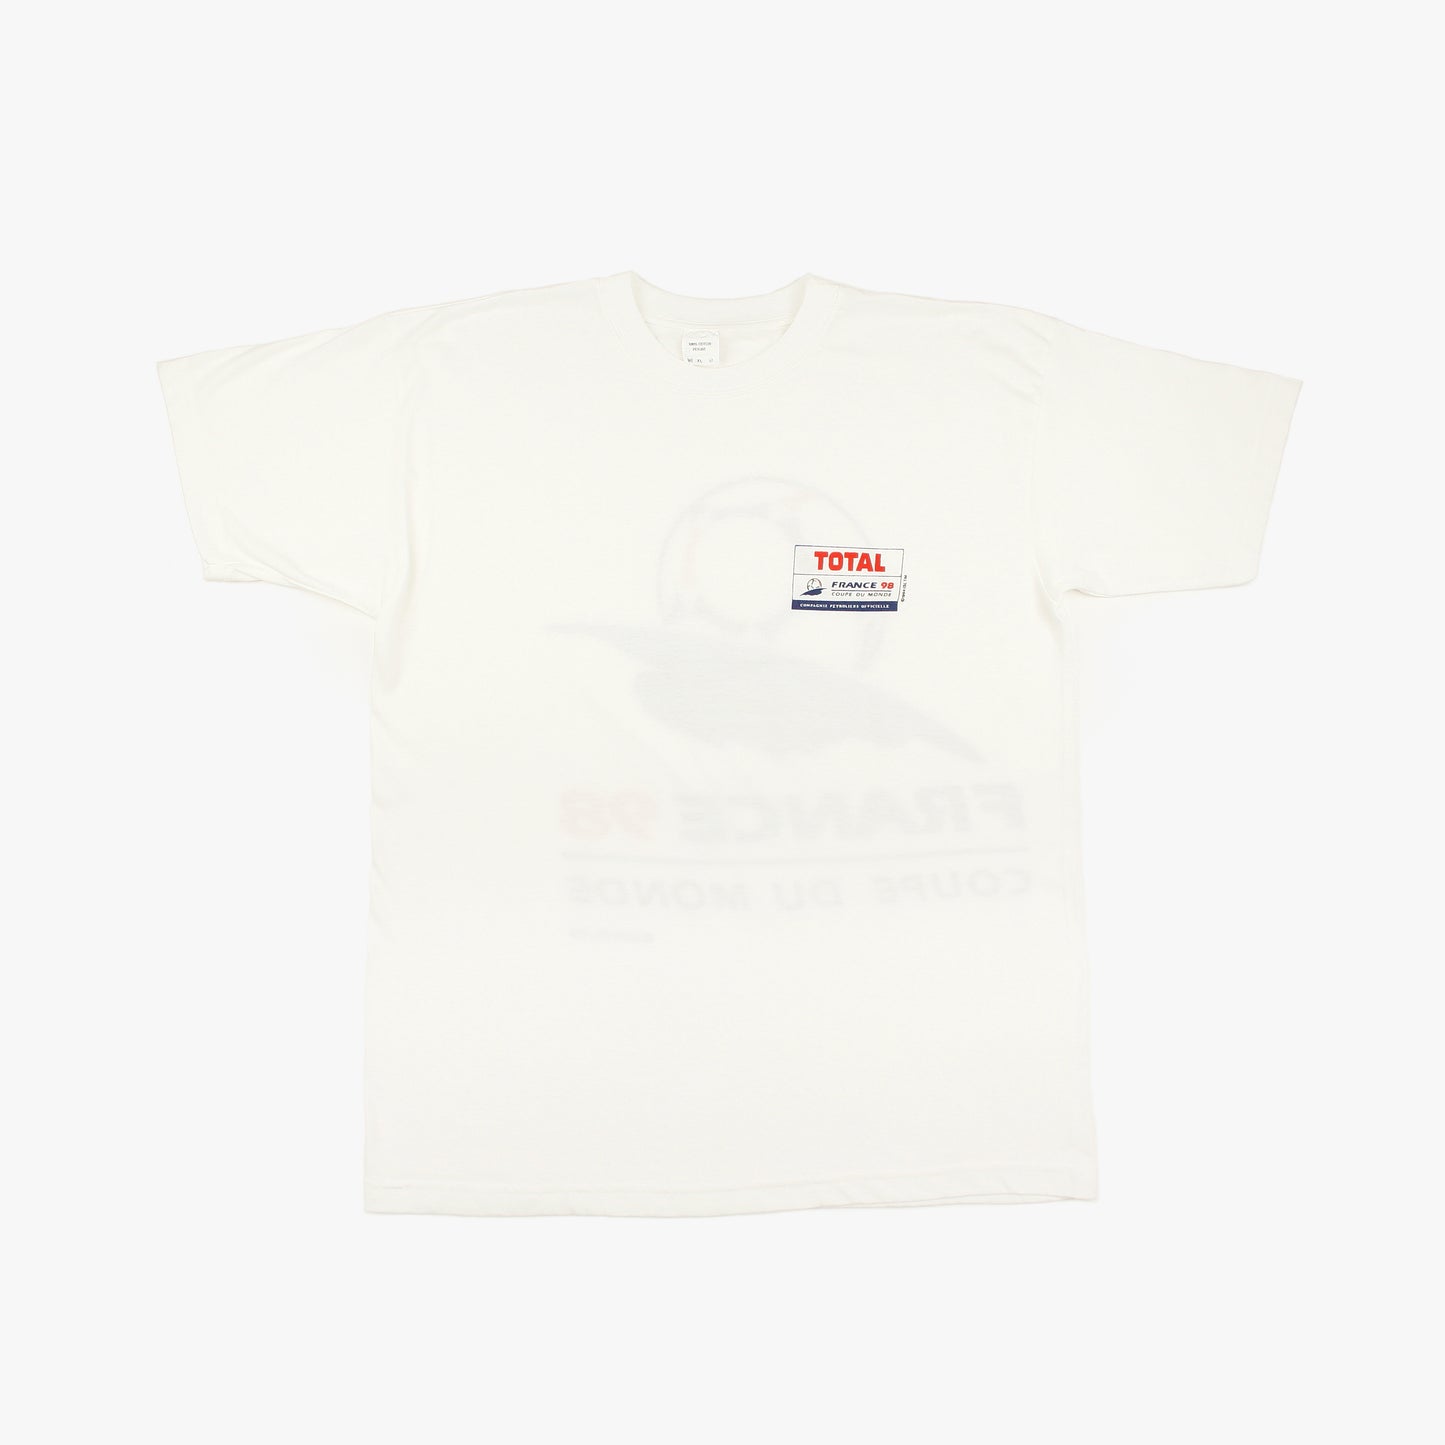 France 98 • Official Merchandise T-Shirt • XL